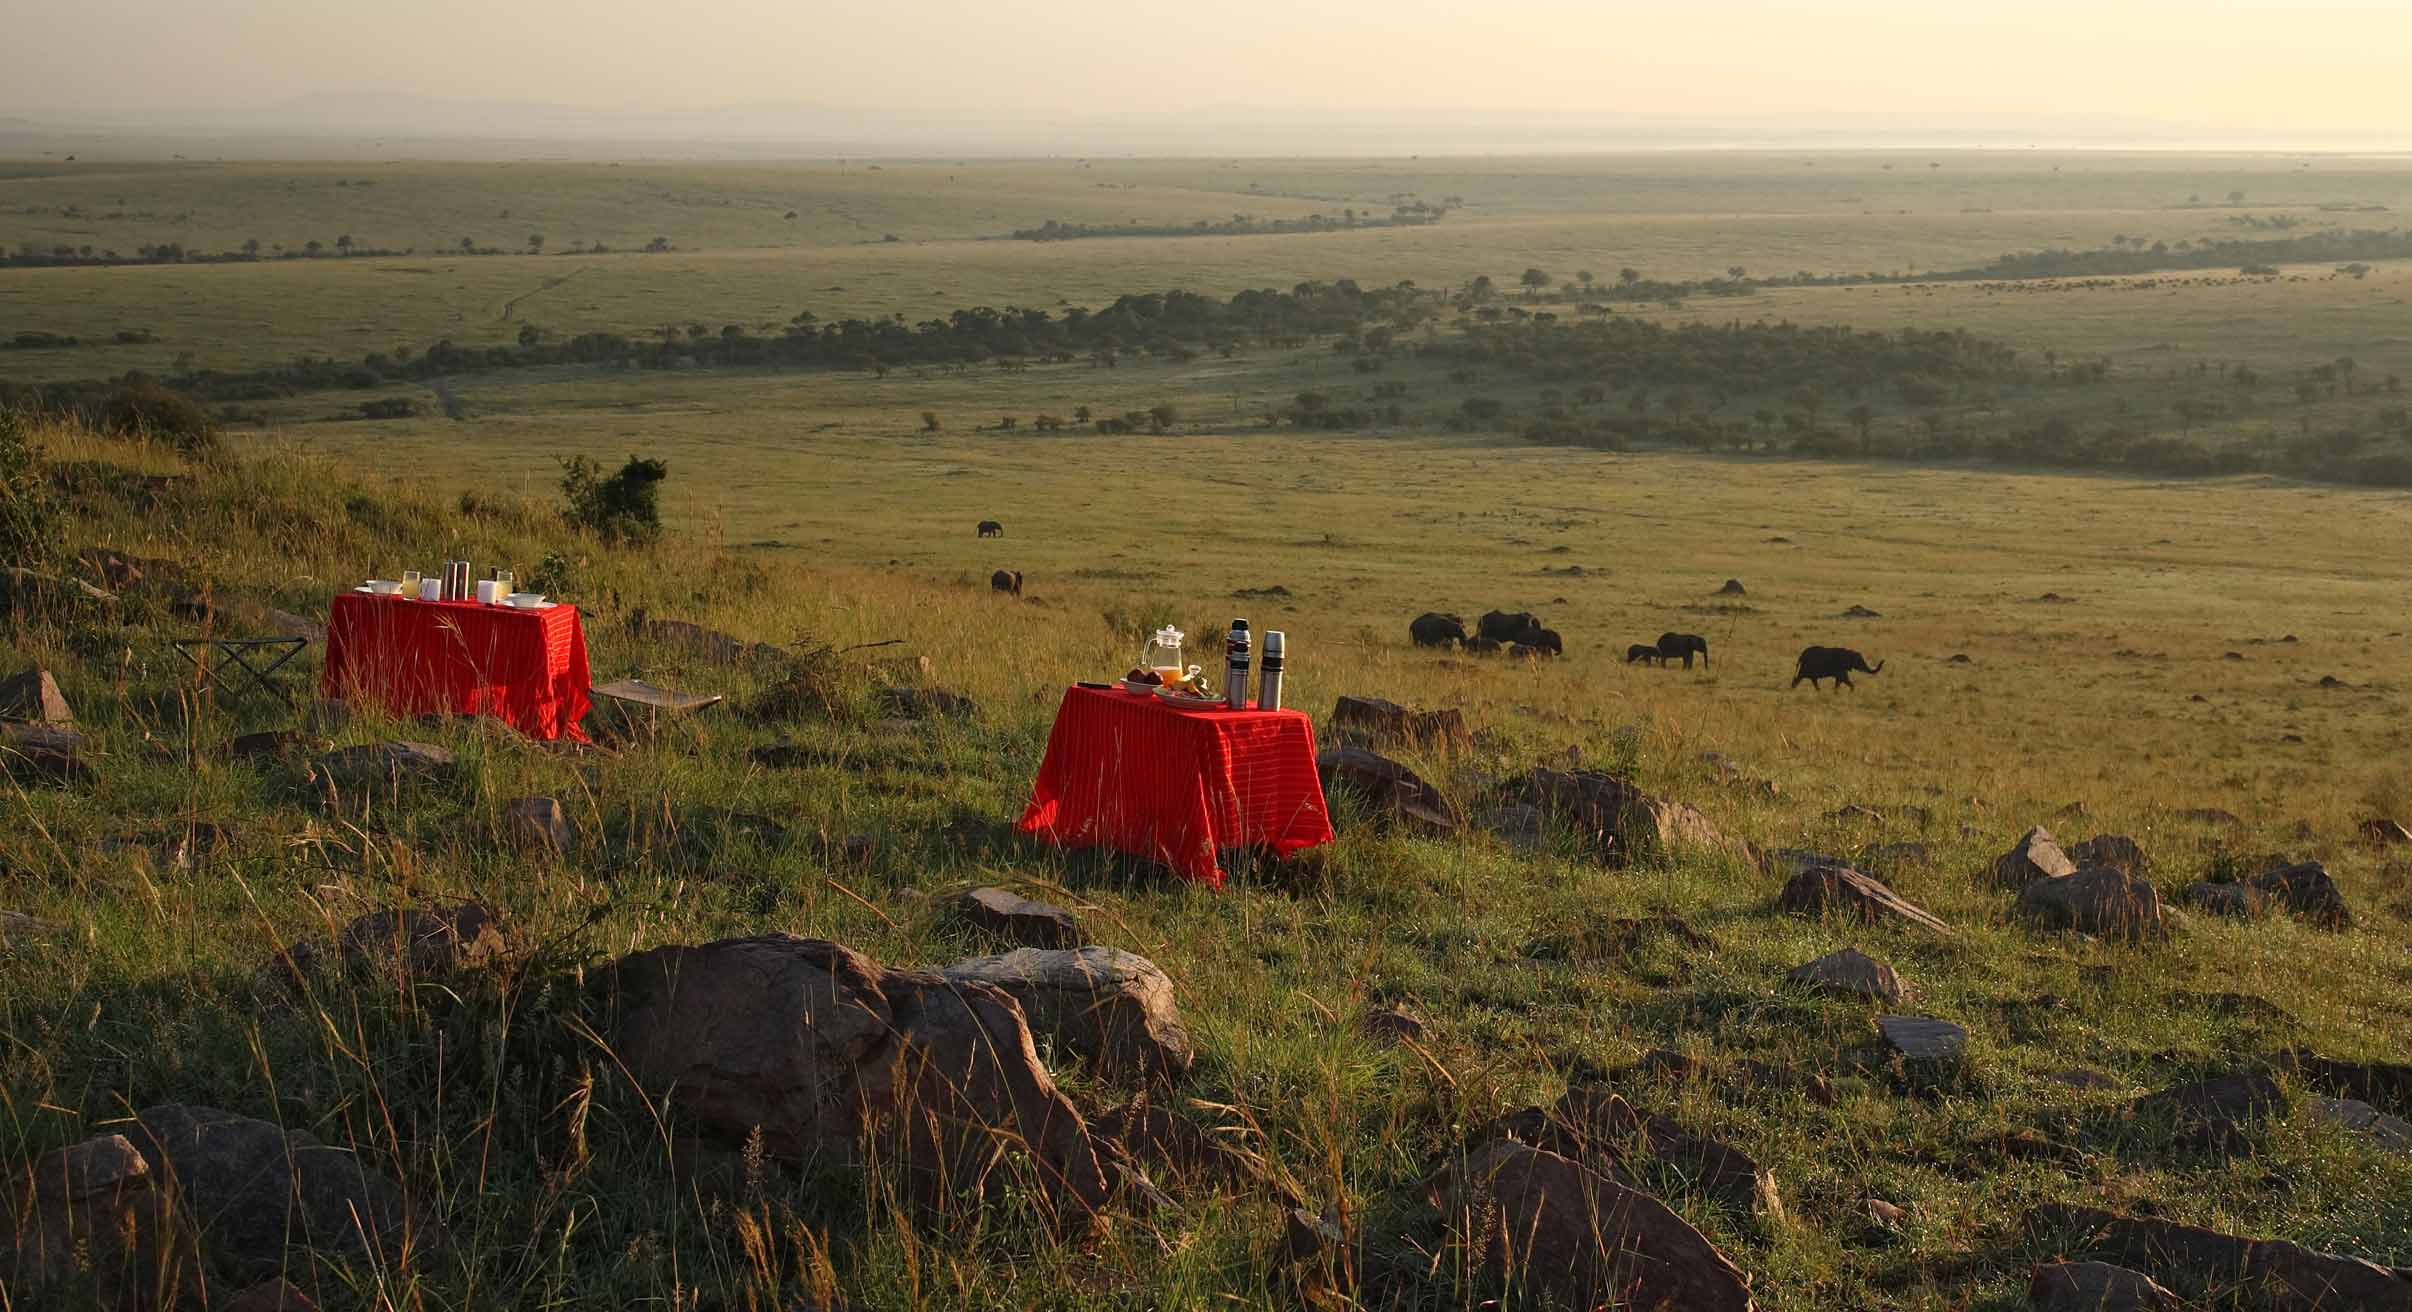 Bush breakfast in Masai Mara, Kenya